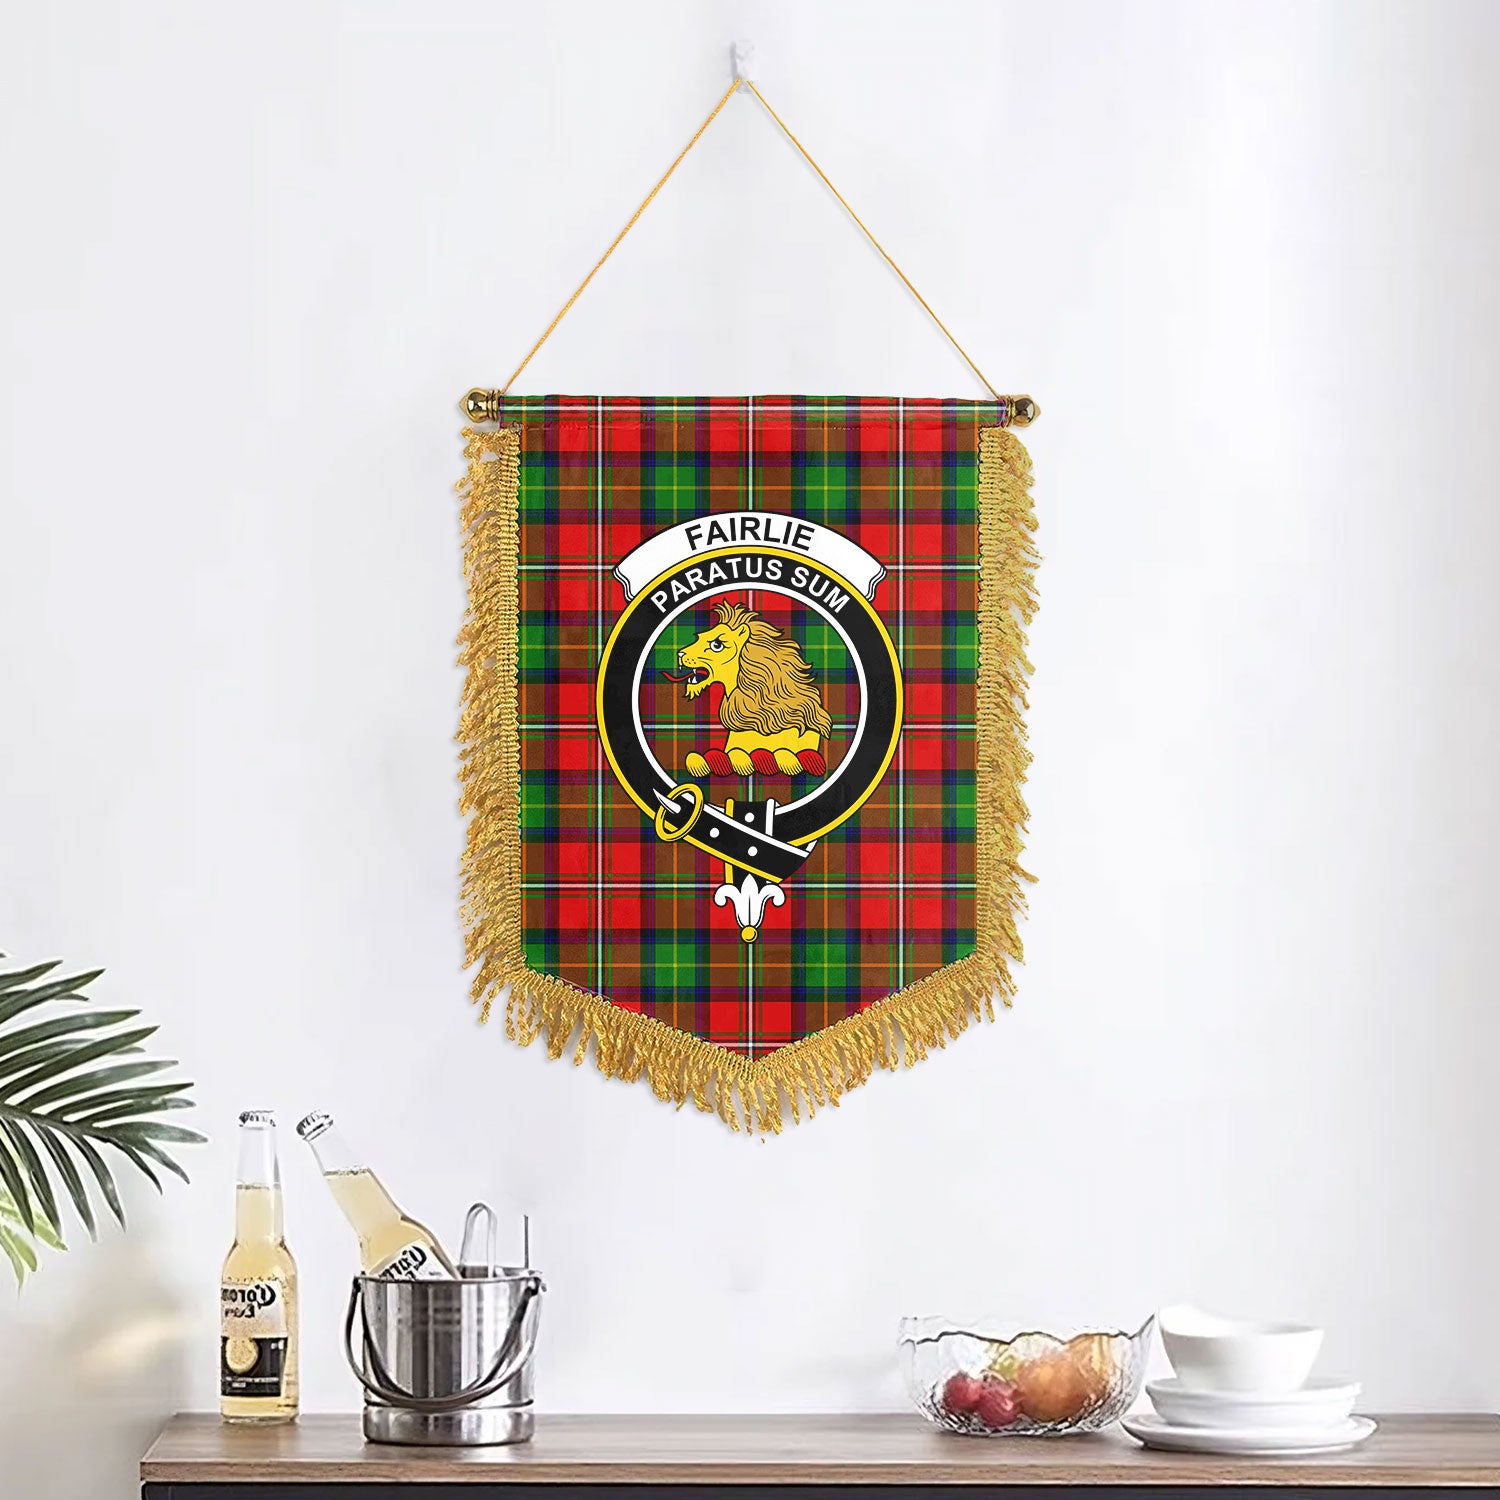 Fairlie Tartan Crest Wall Hanging Banner